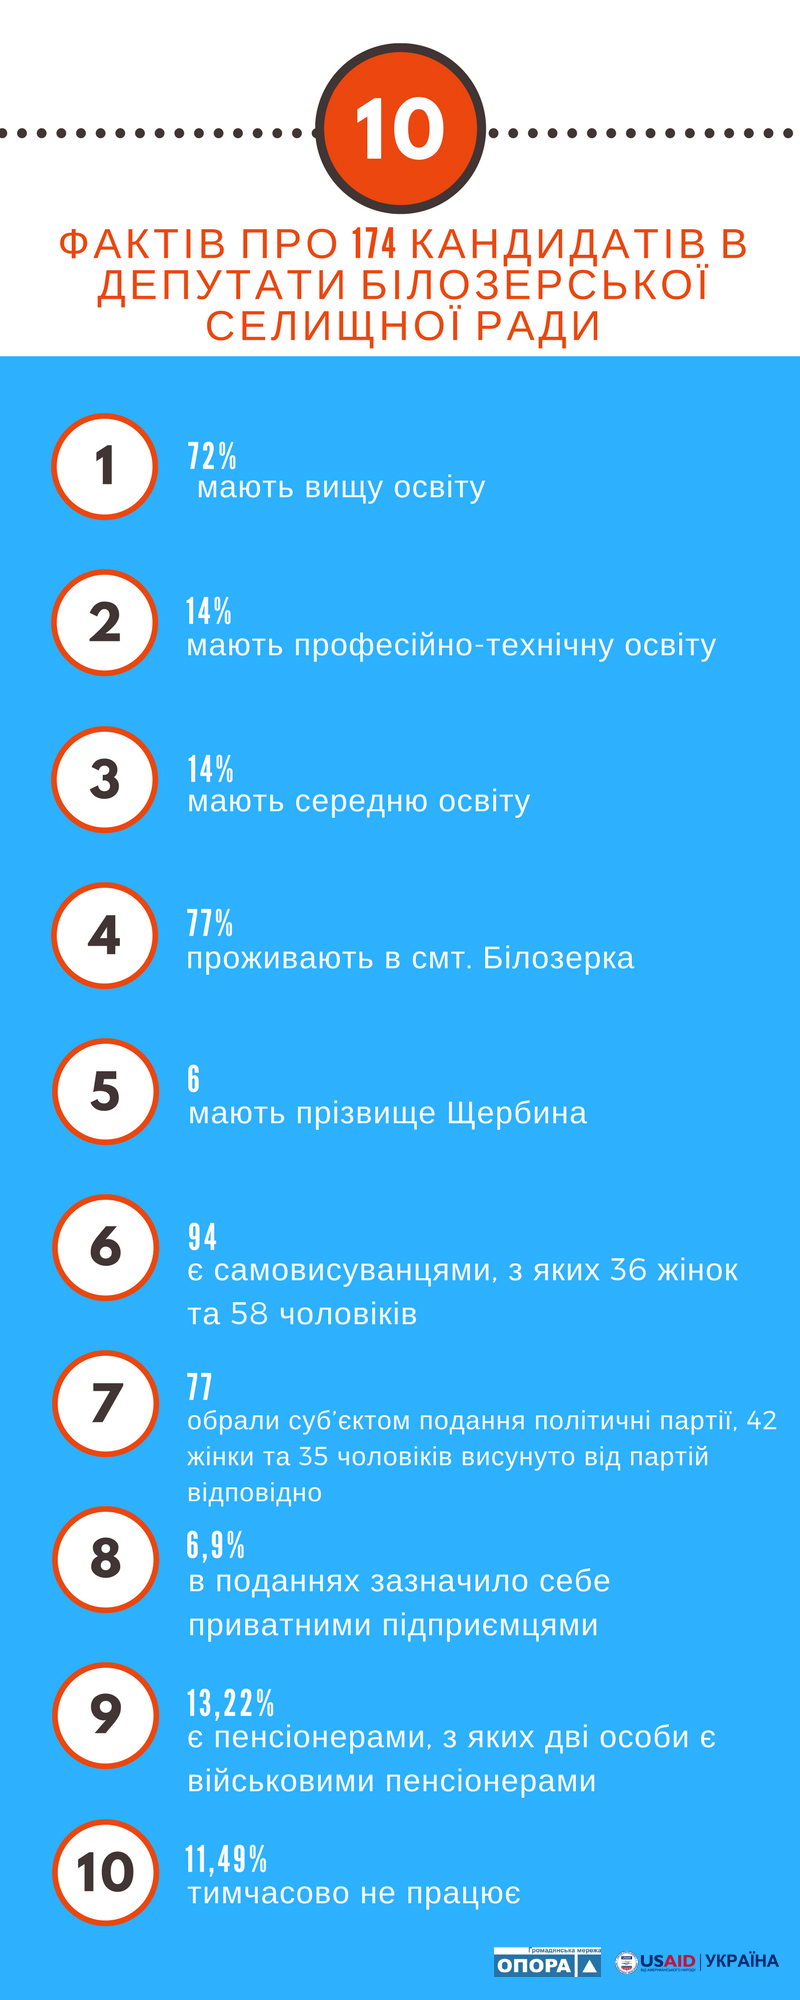 17 10 2017 Kherson 10 faktiv pro kandydativ do Bilozerskoi OTG